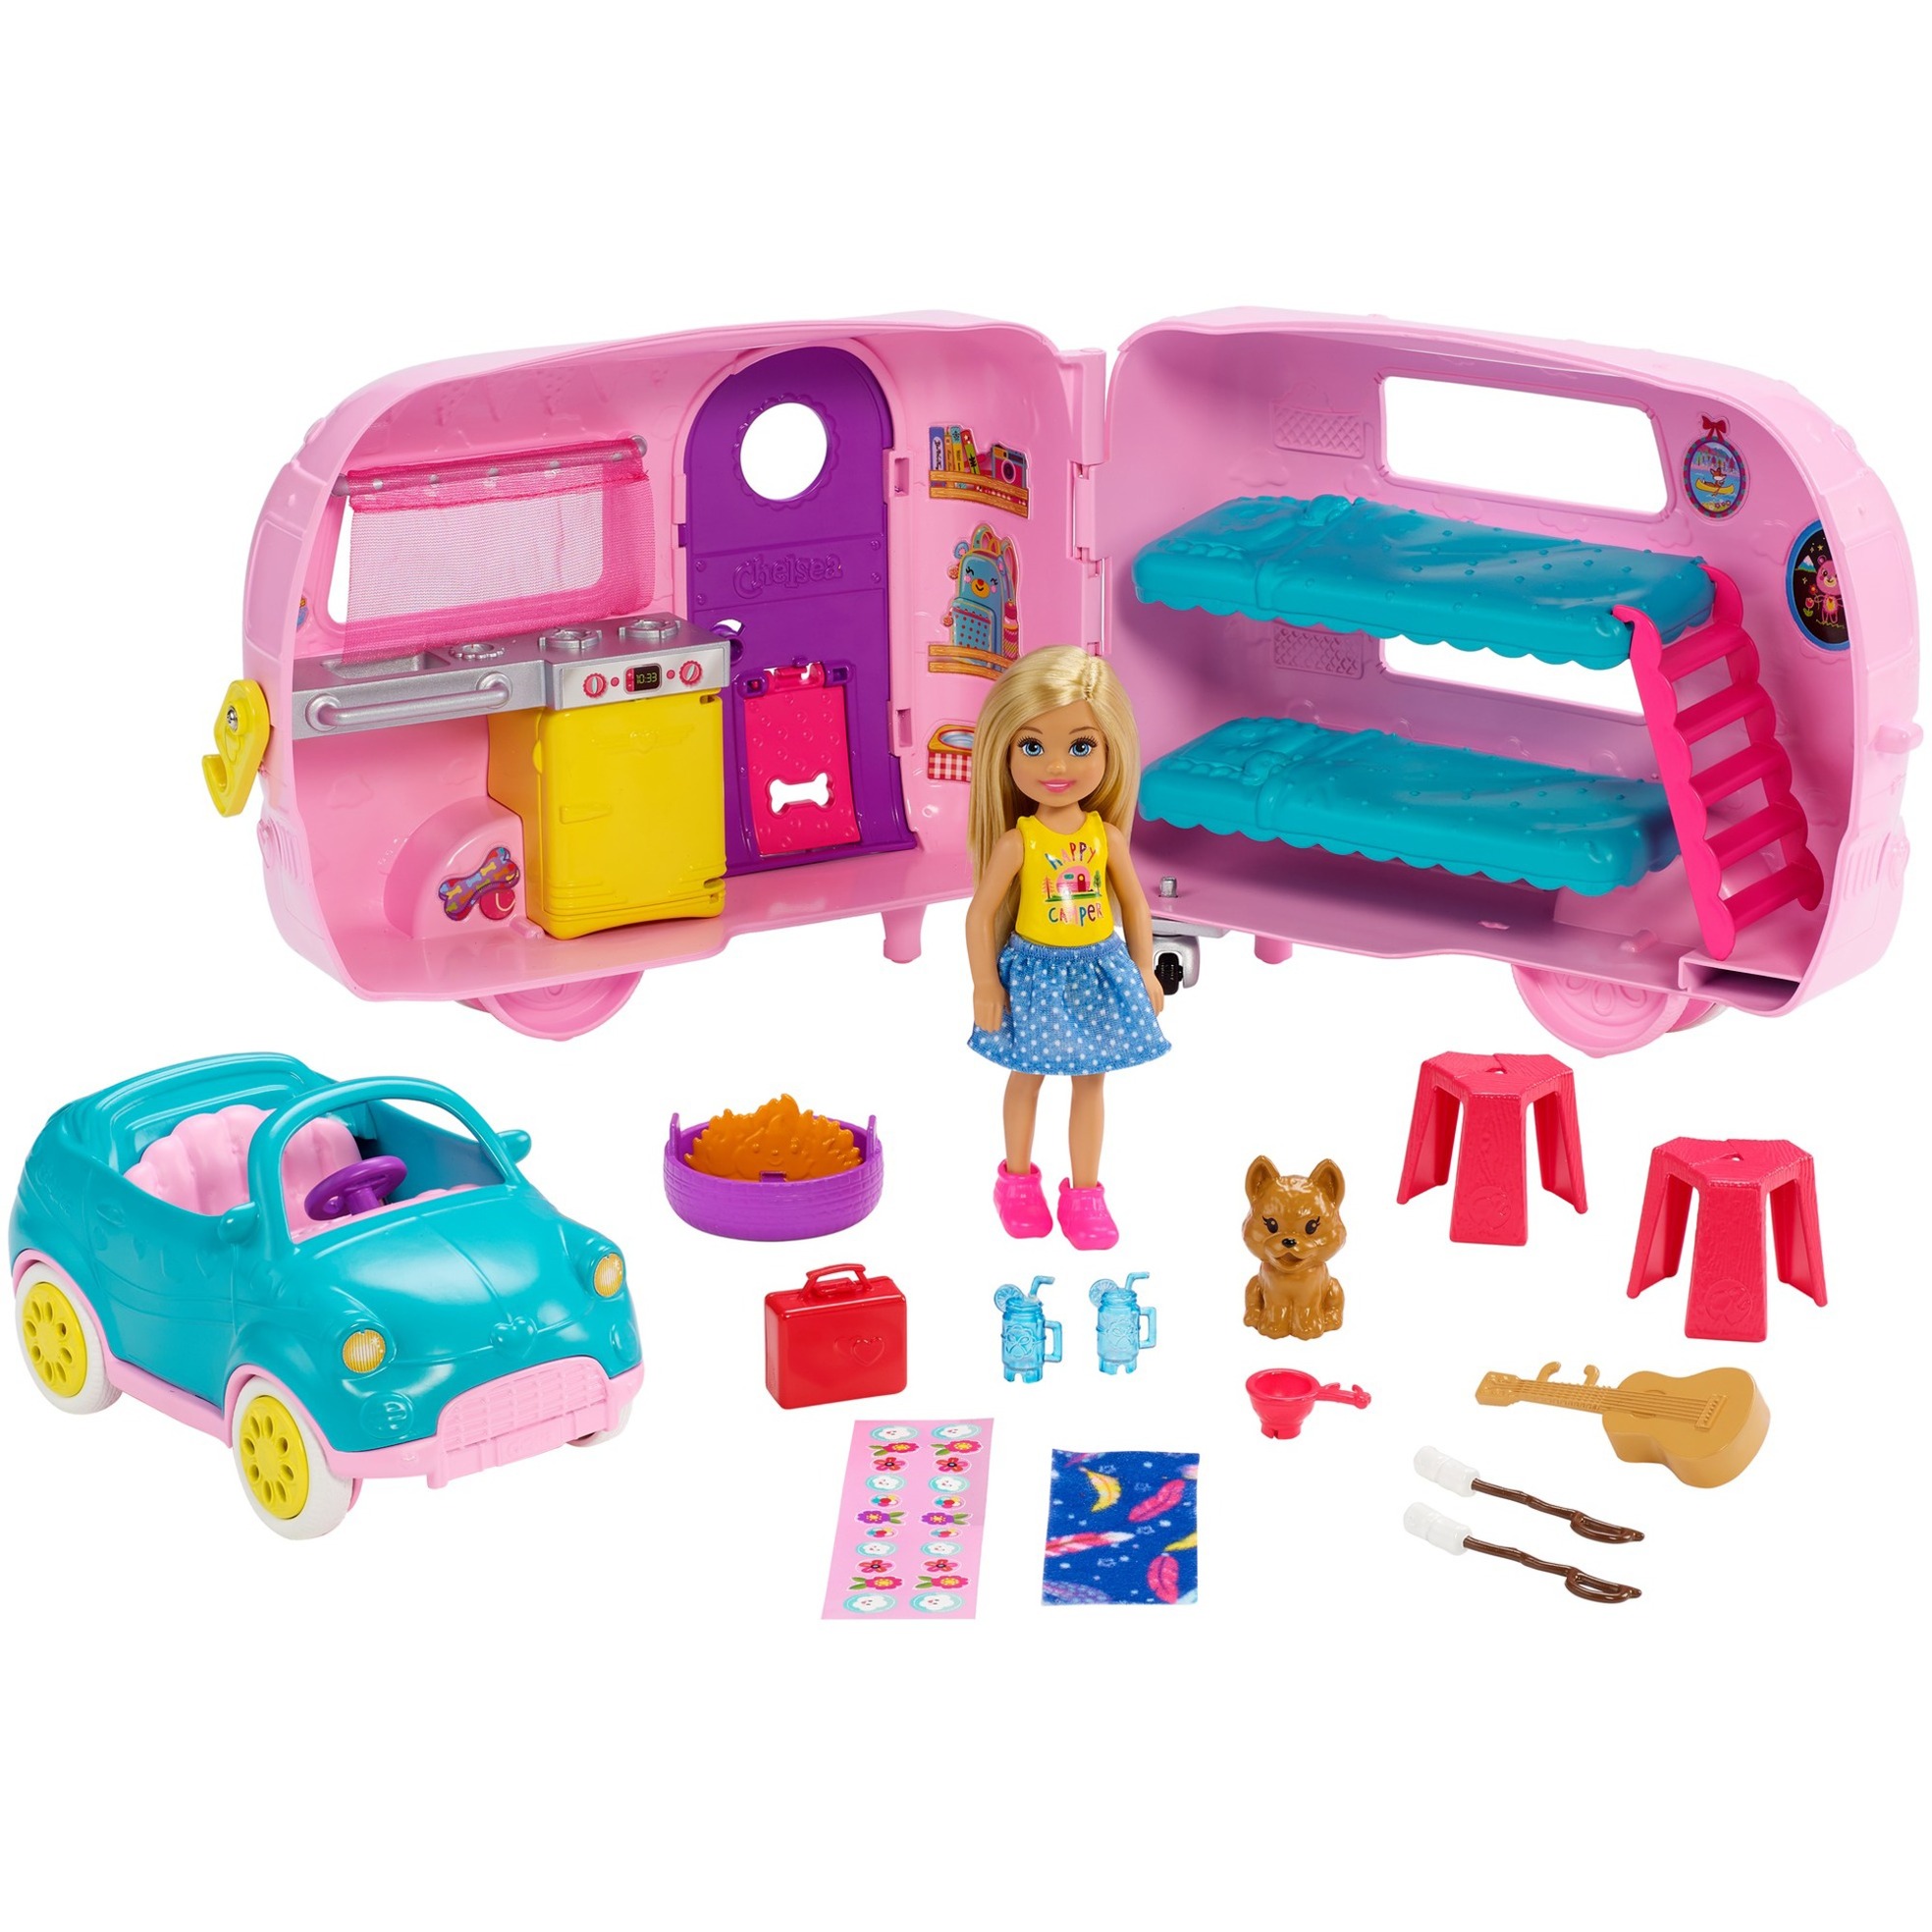 Image of Alternate - Barbie Chelsea Camper und Puppe Spielset online einkaufen bei Alternate